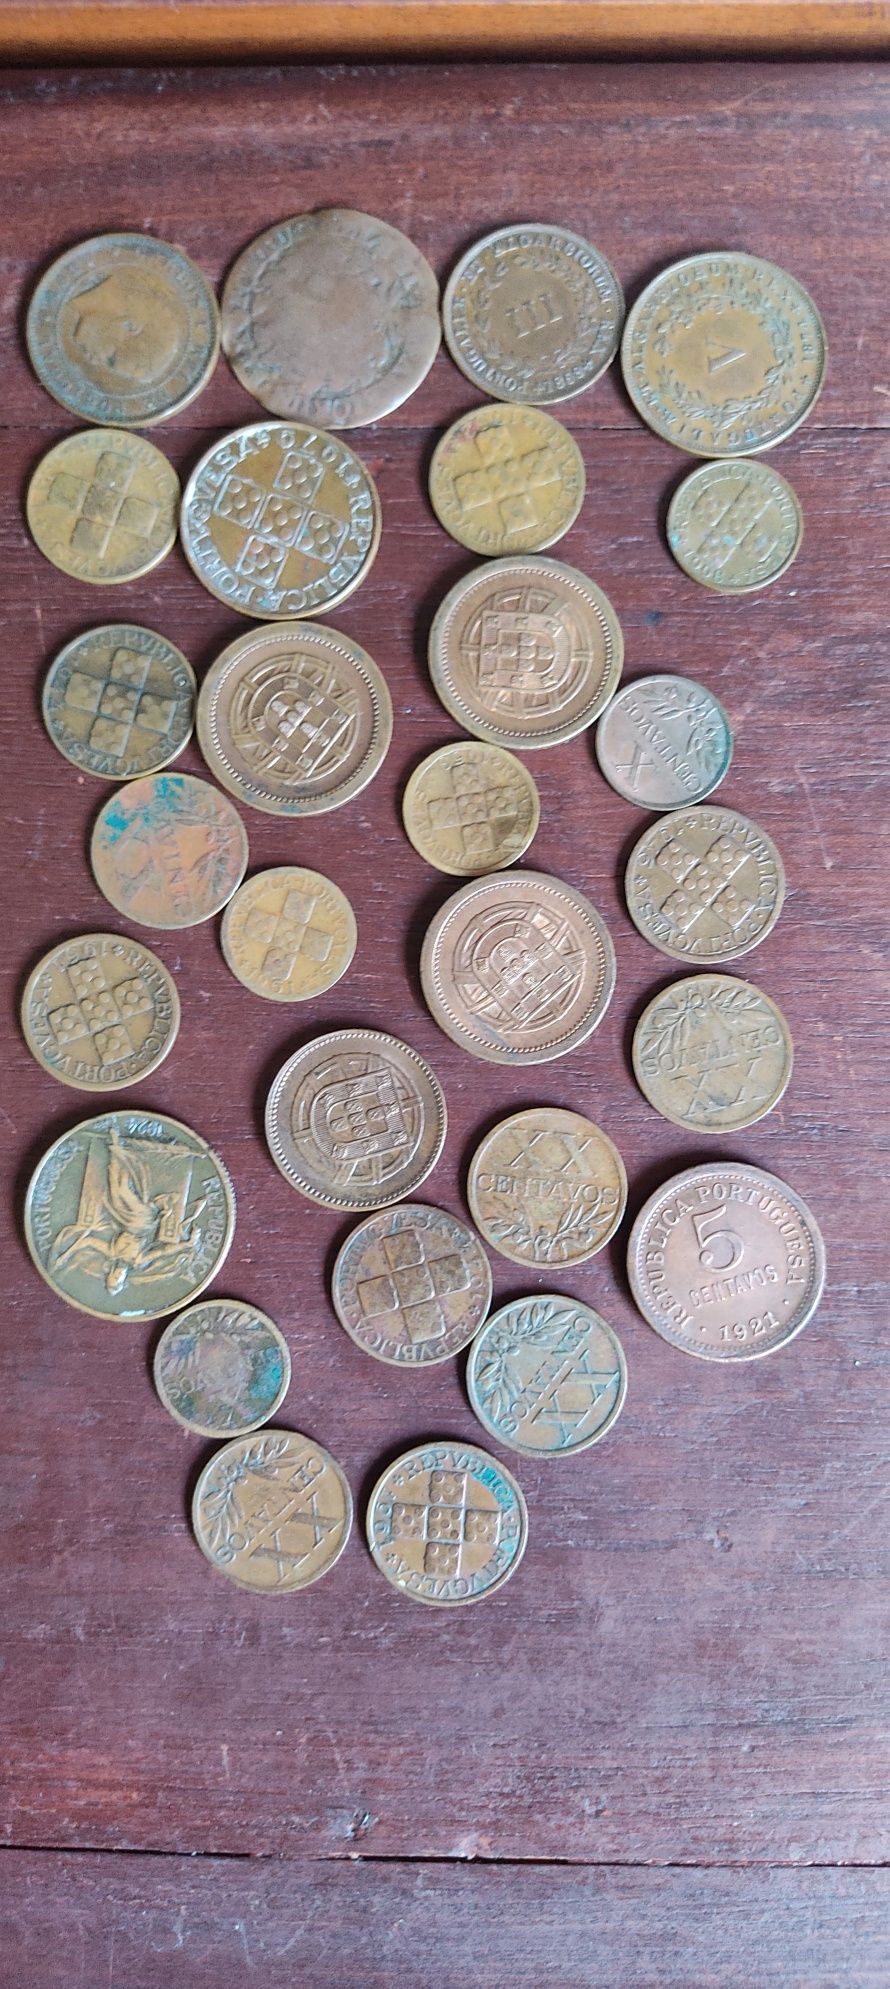 Monet,dinheiro,coins